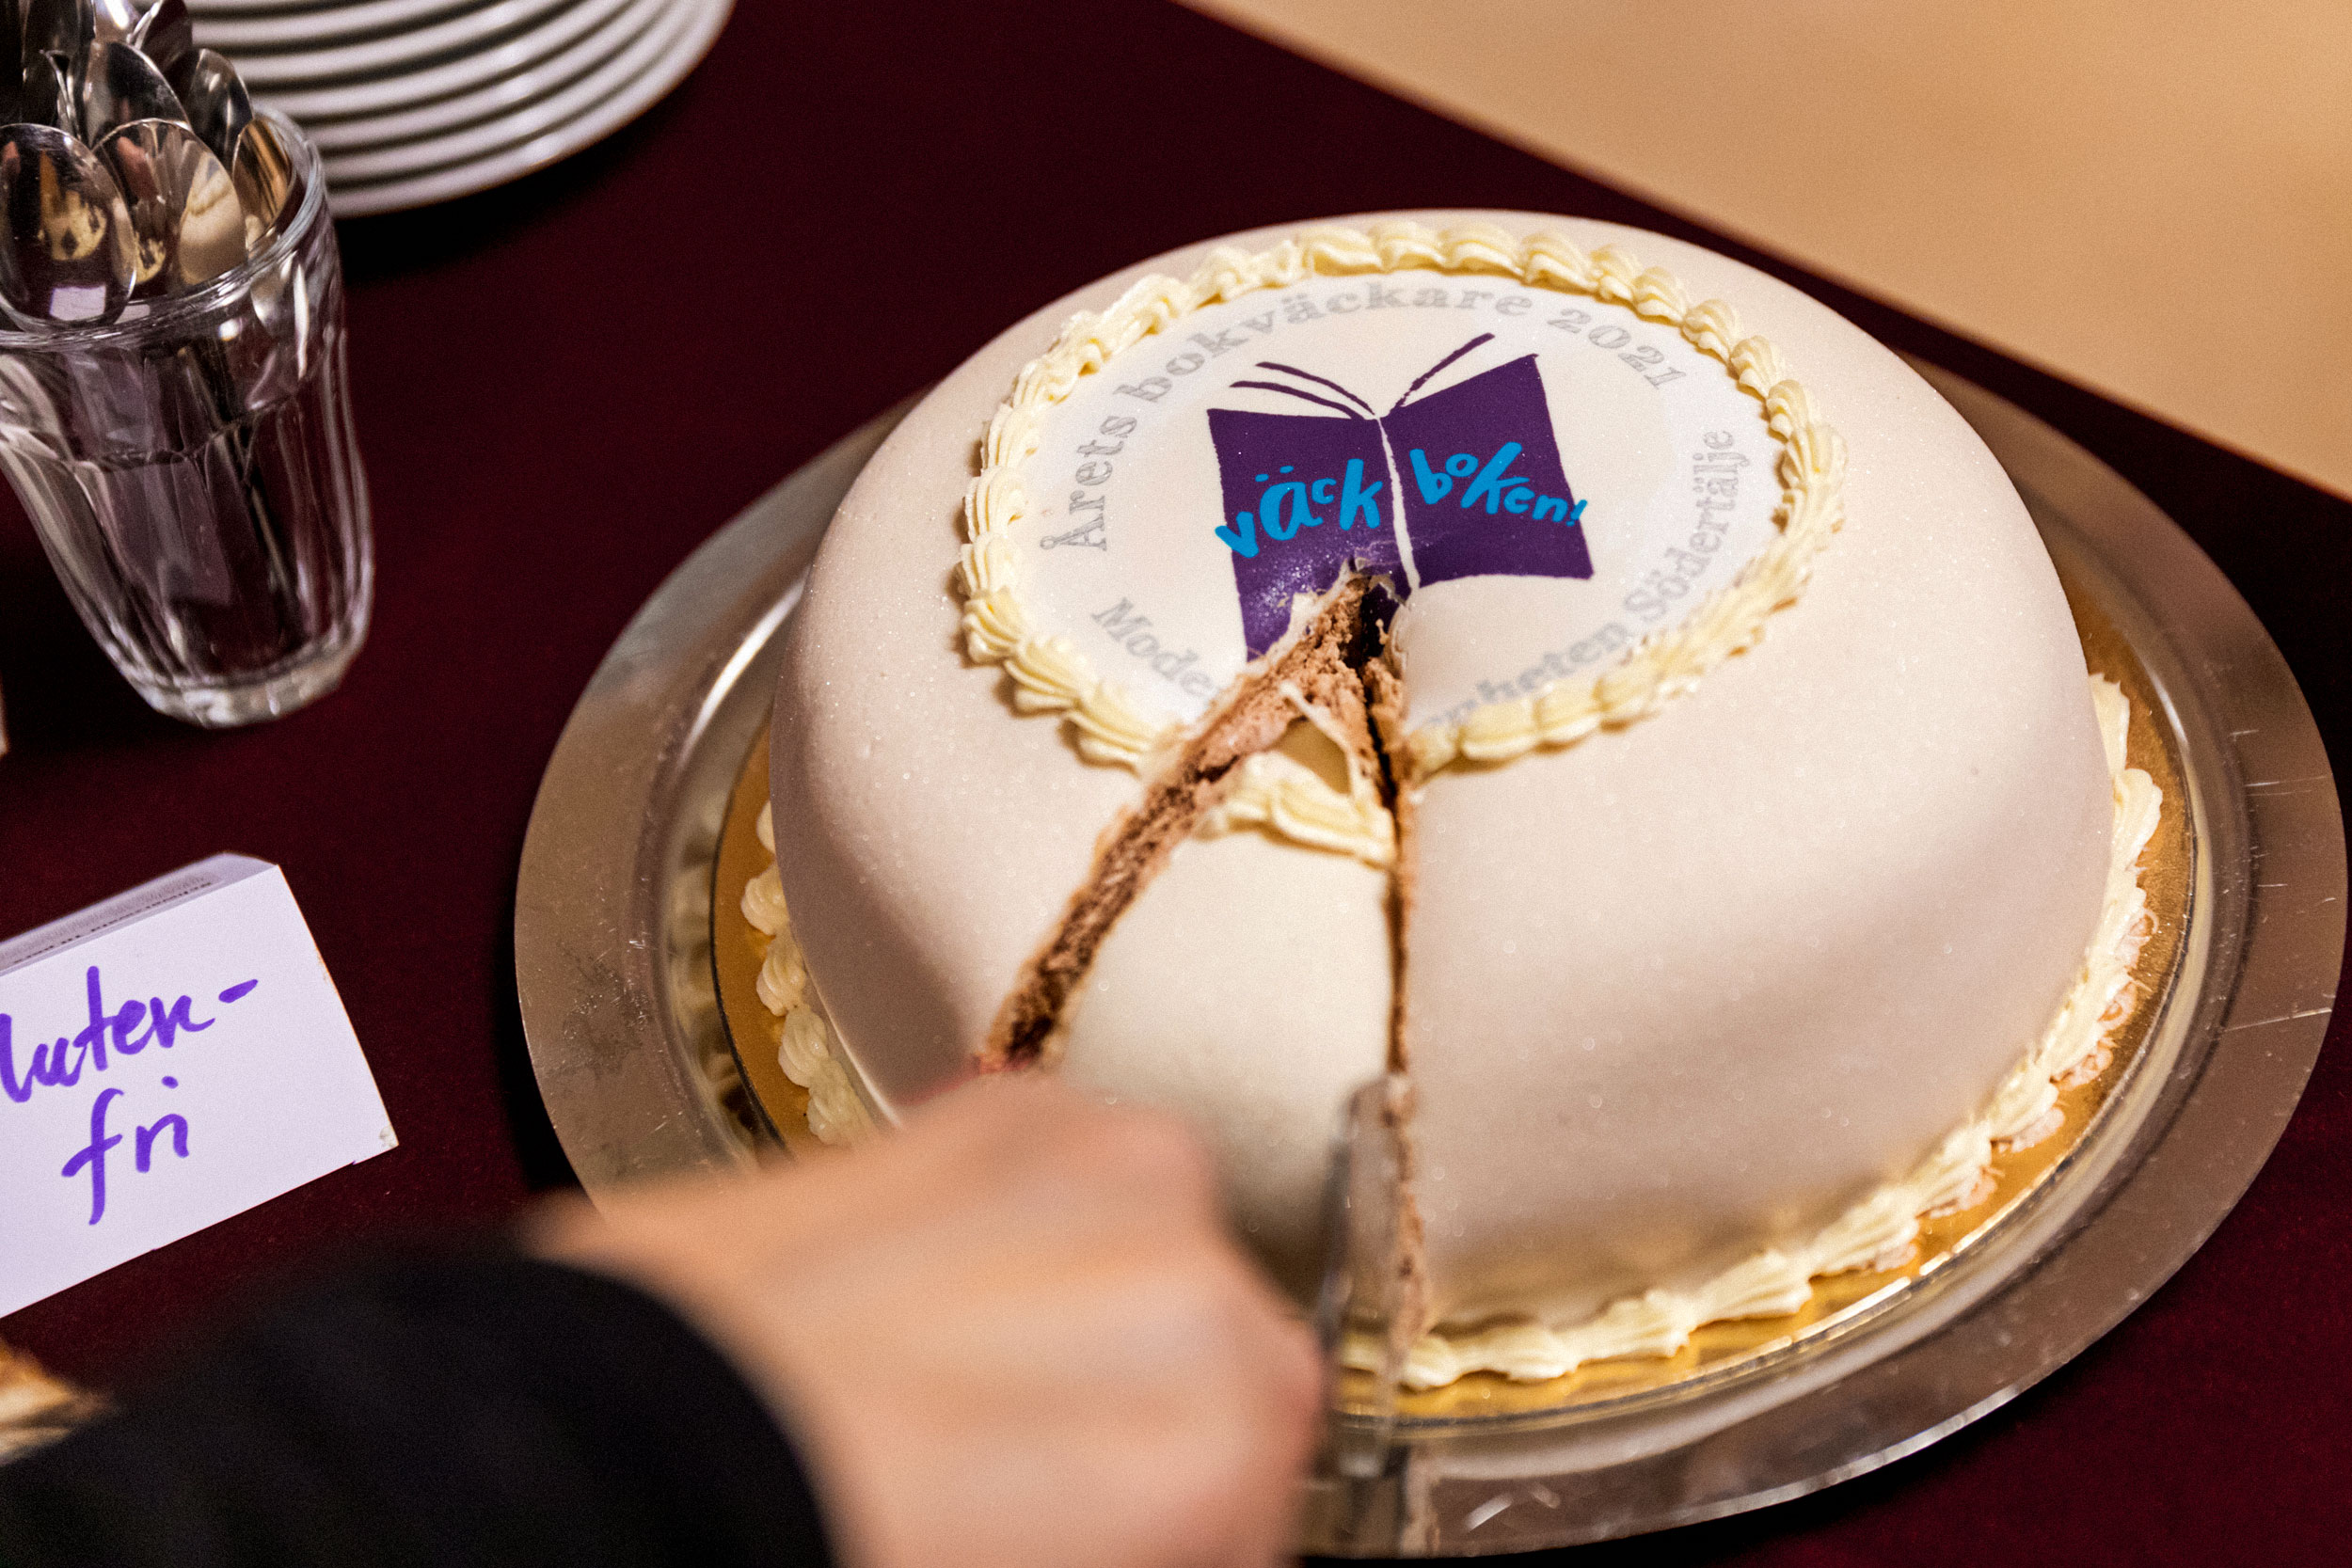 Tårta med Väck boken-logotyp skärs upp.